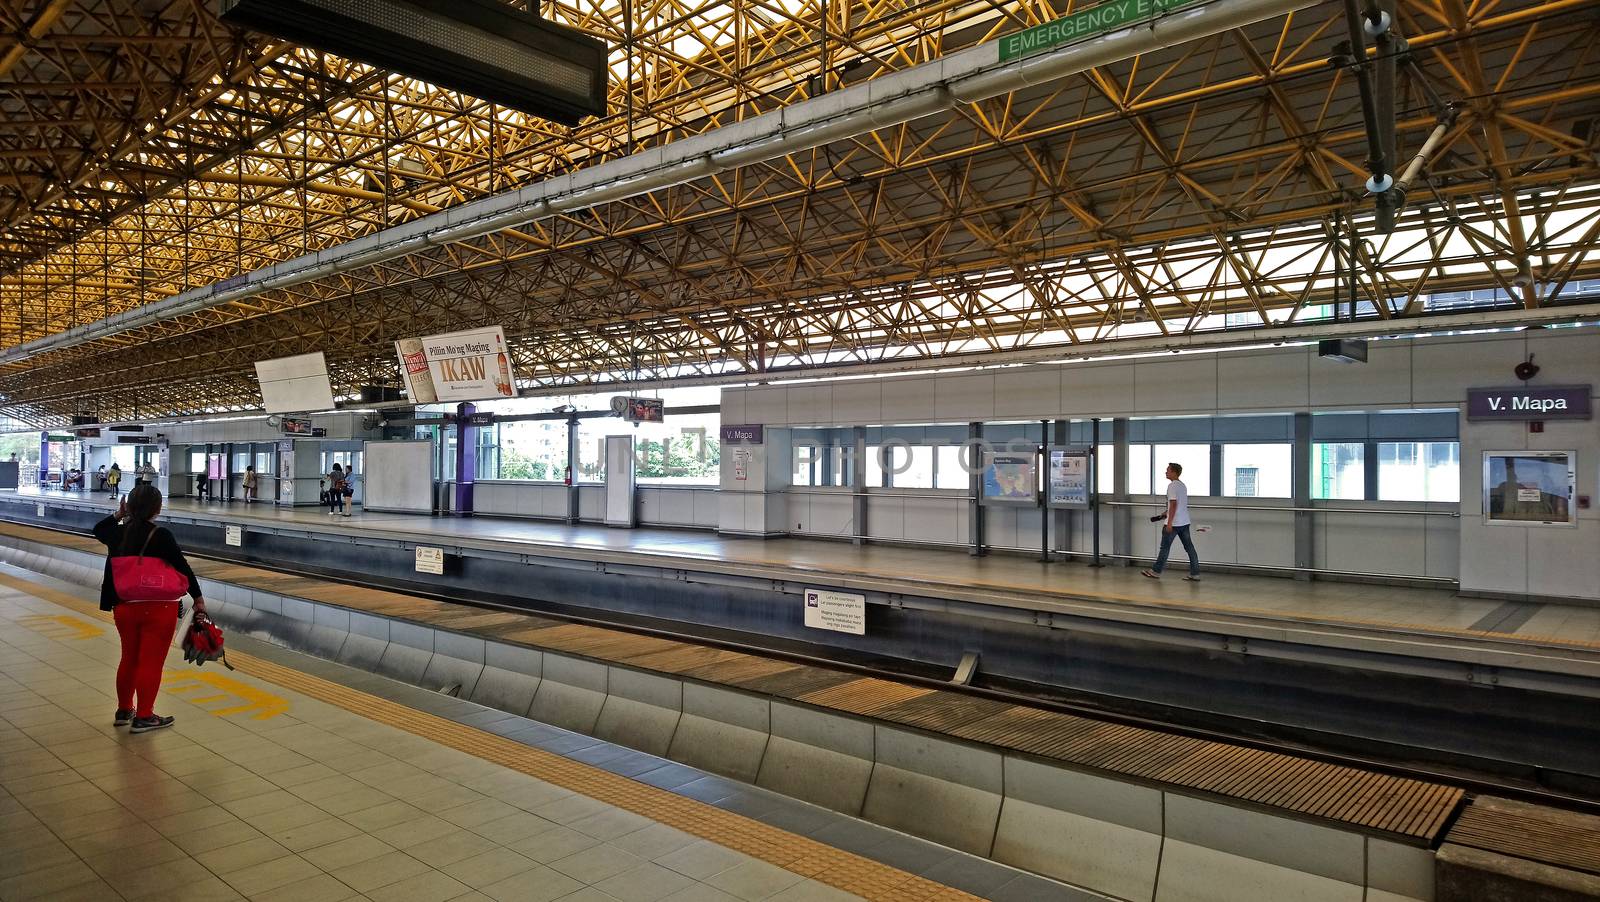 Light rail transit 2 V. Mapa station platform in Manila, Philippines by imwaltersy